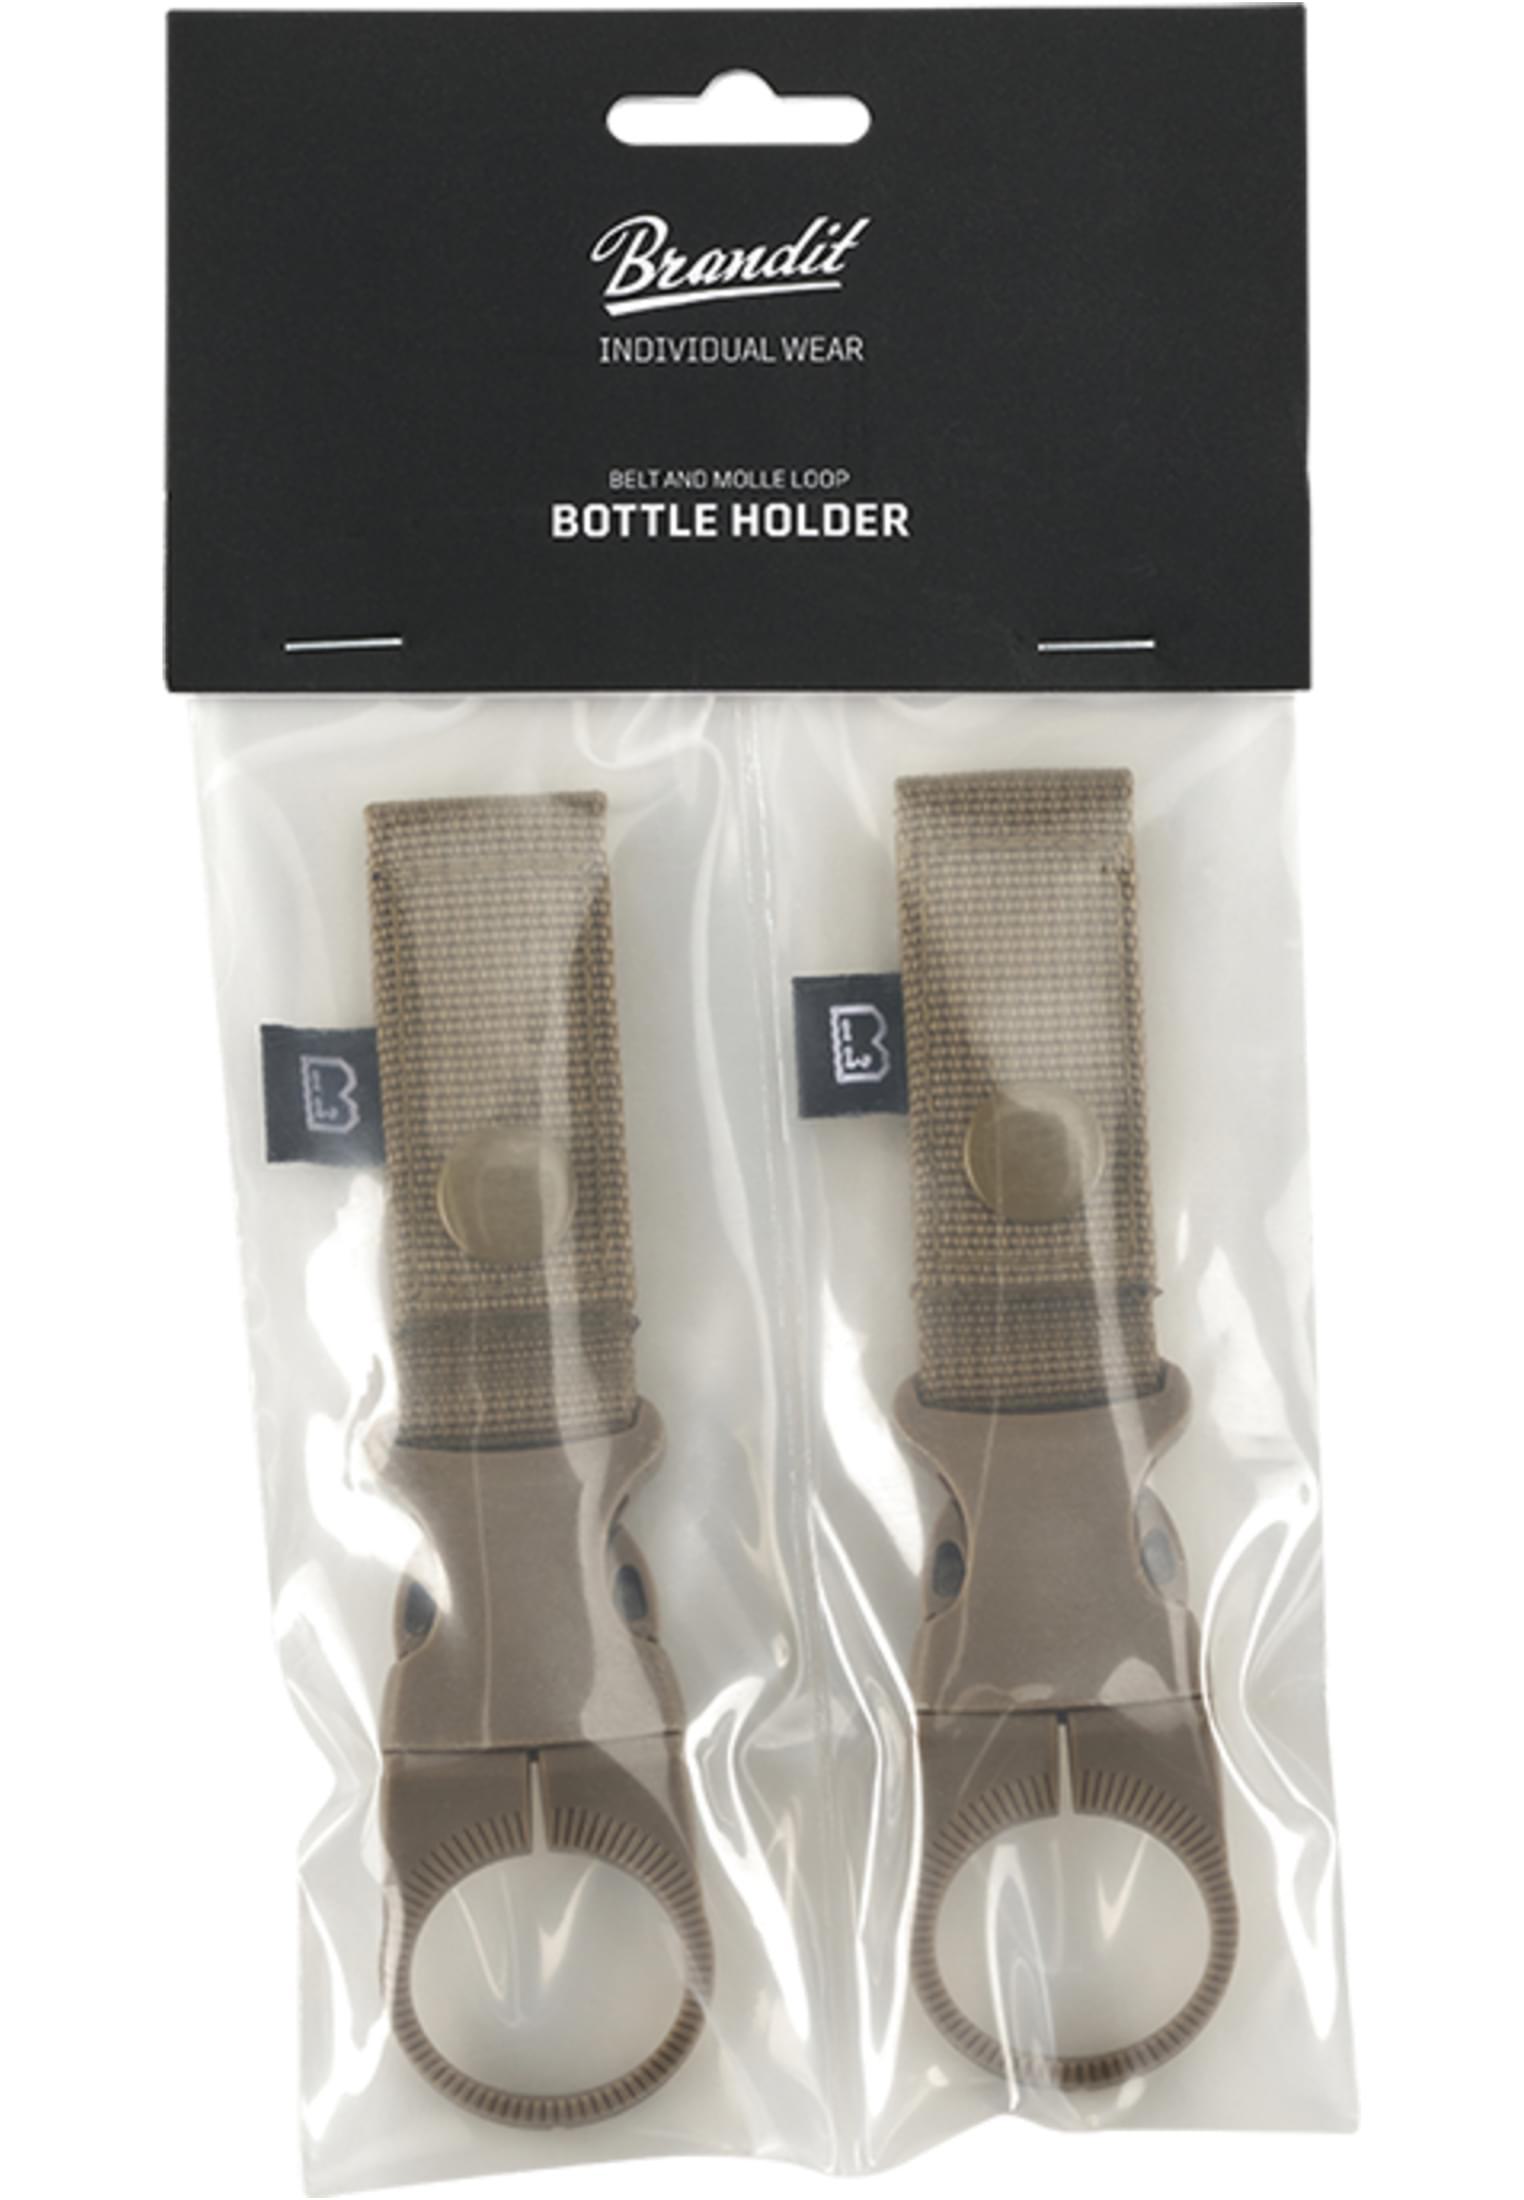 Brandit Belt and Molle Loop Bottle Holder 2 Pack (Farbe: camel / Größe: one size)